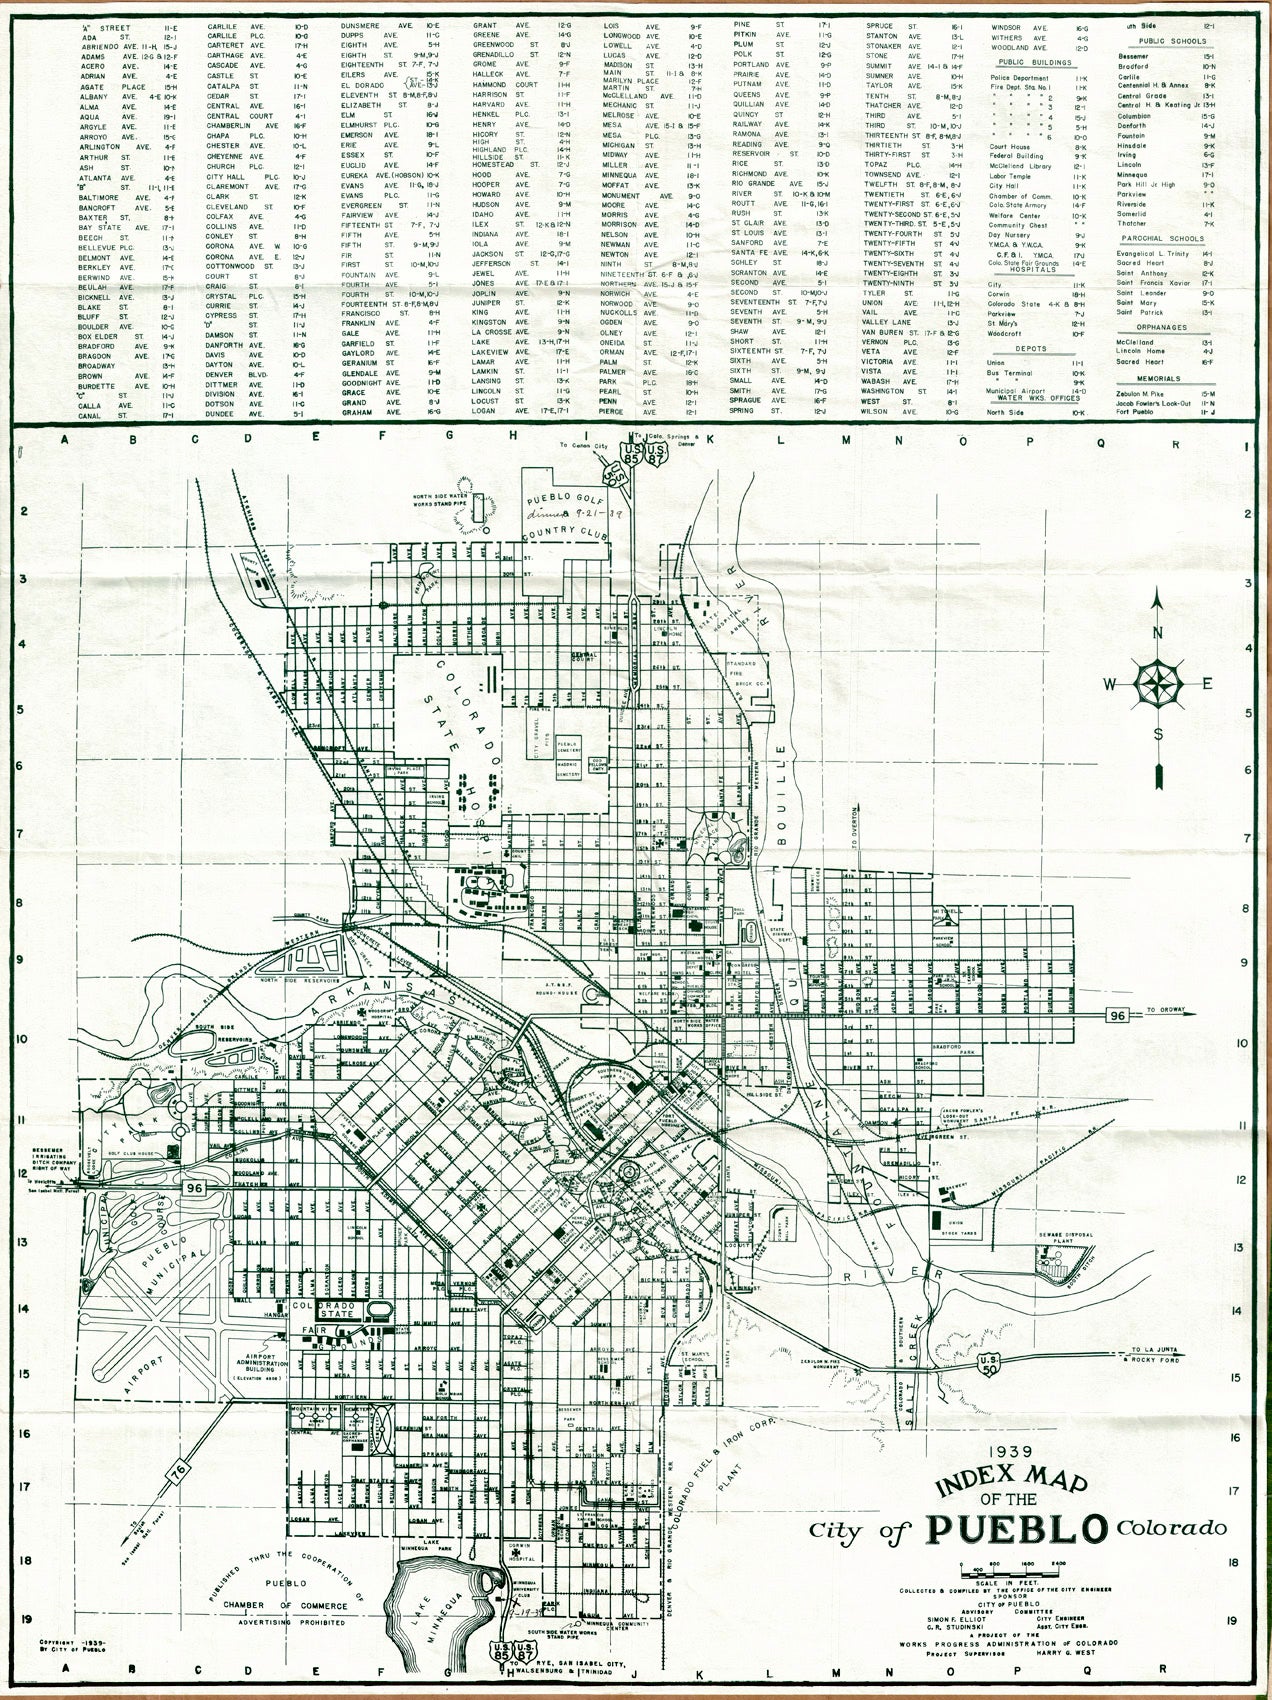 (CO. - Pueblo) Index Map Of The City of Pueblo Colorado